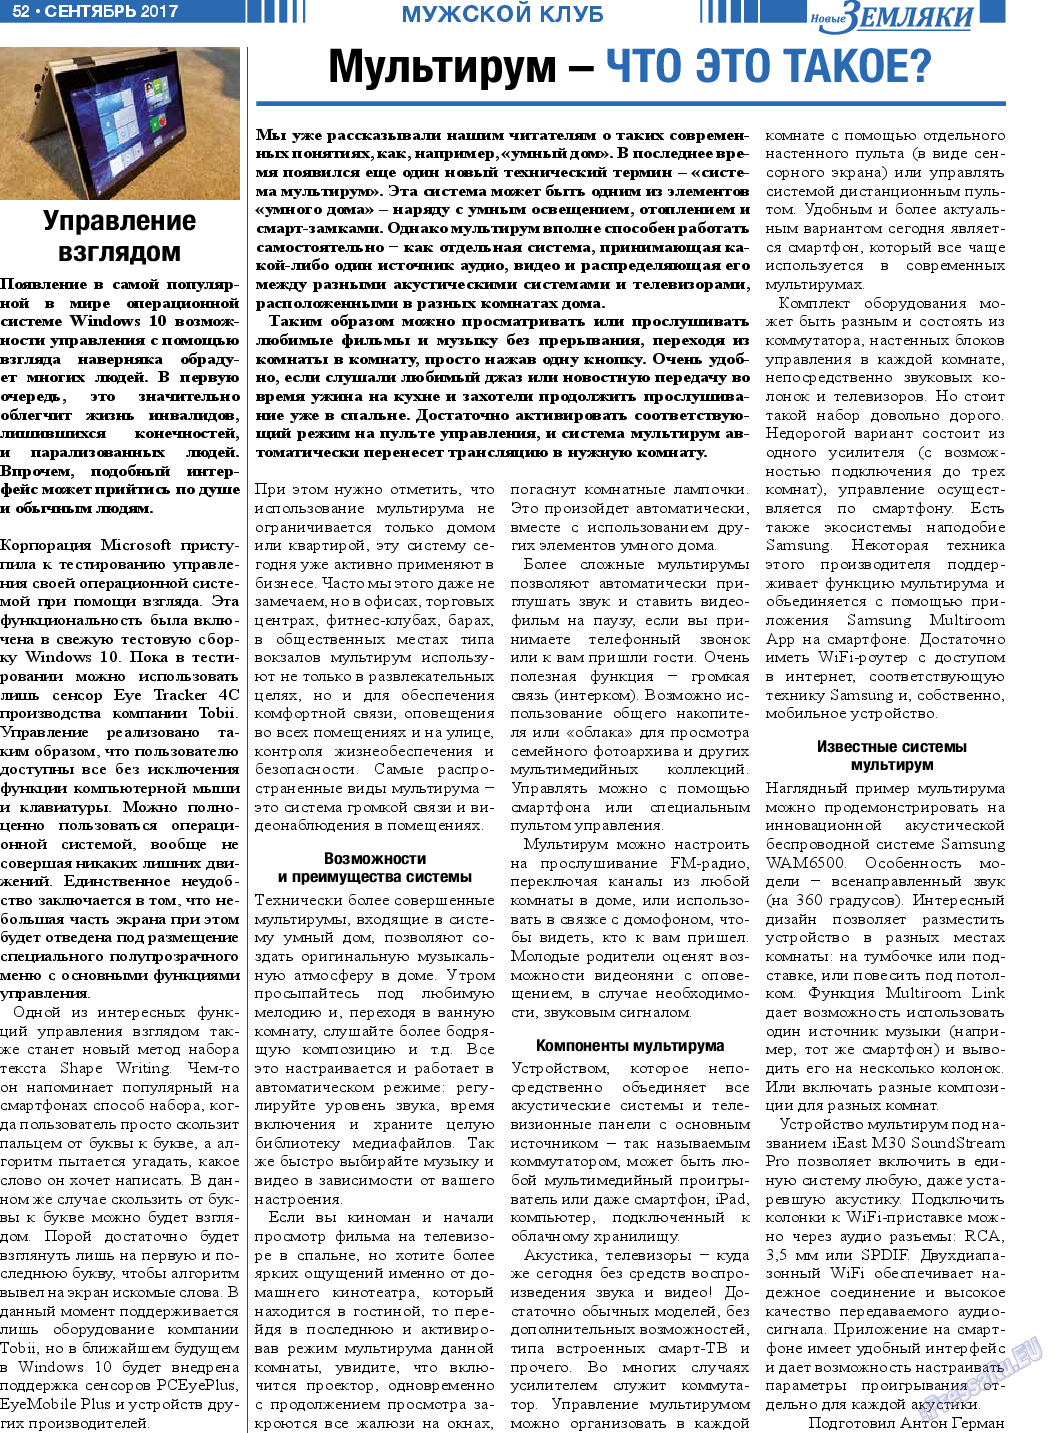 Новые Земляки, газета. 2017 №9 стр.52